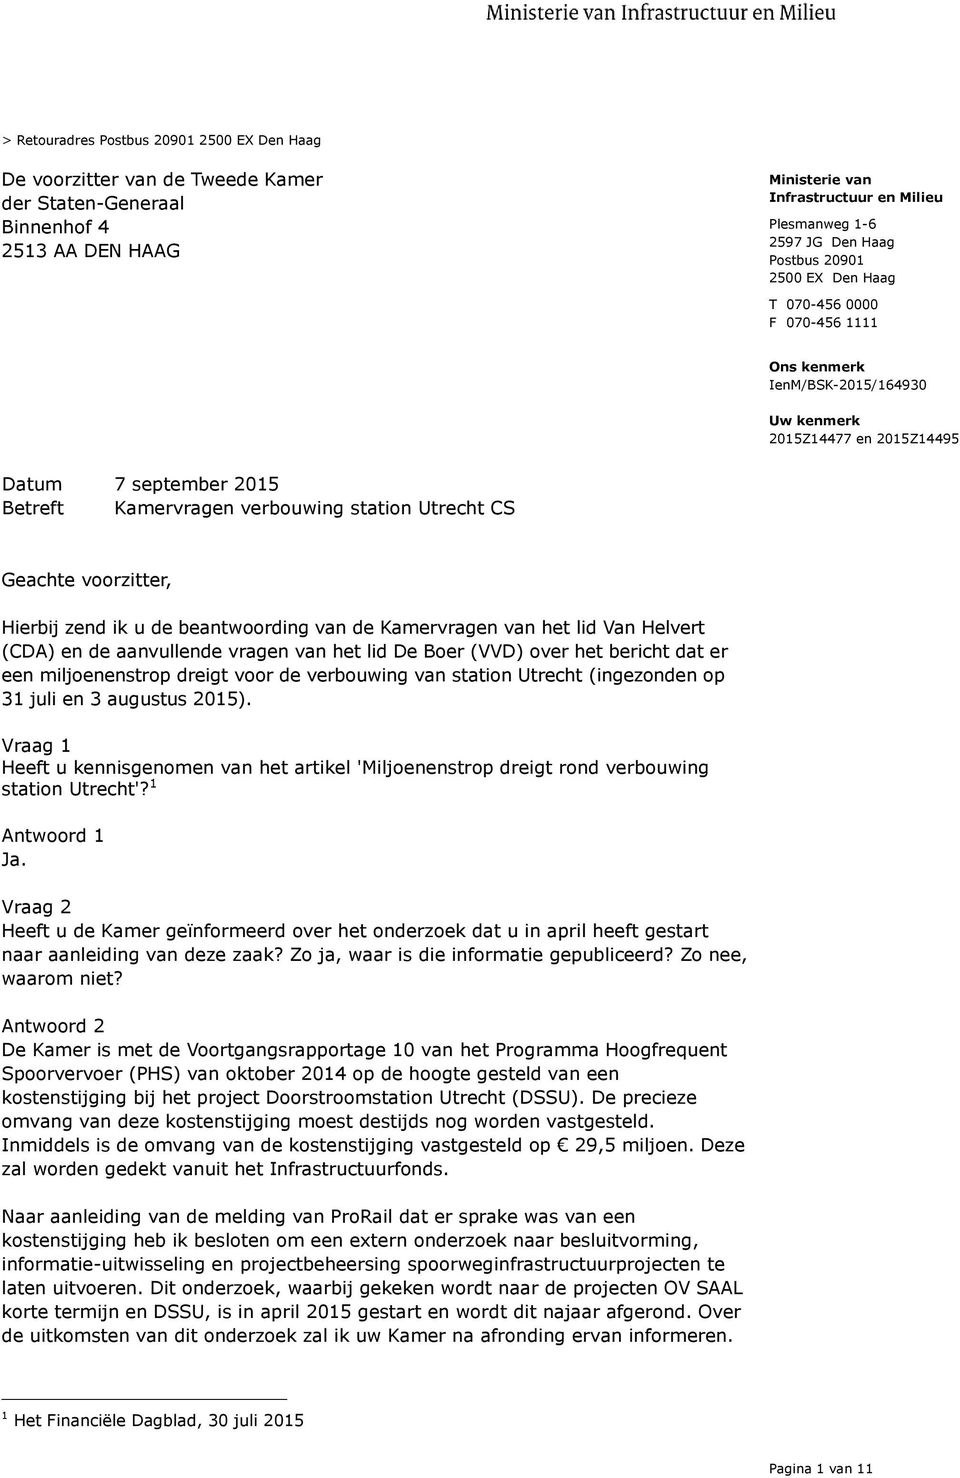 (CDA) en de aanvullende vragen van het lid De Boer (VVD) over het bericht dat er een miljoenenstrop dreigt voor de verbouwing van station Utrecht (ingezonden op 31 juli en 3 augustus 2015).